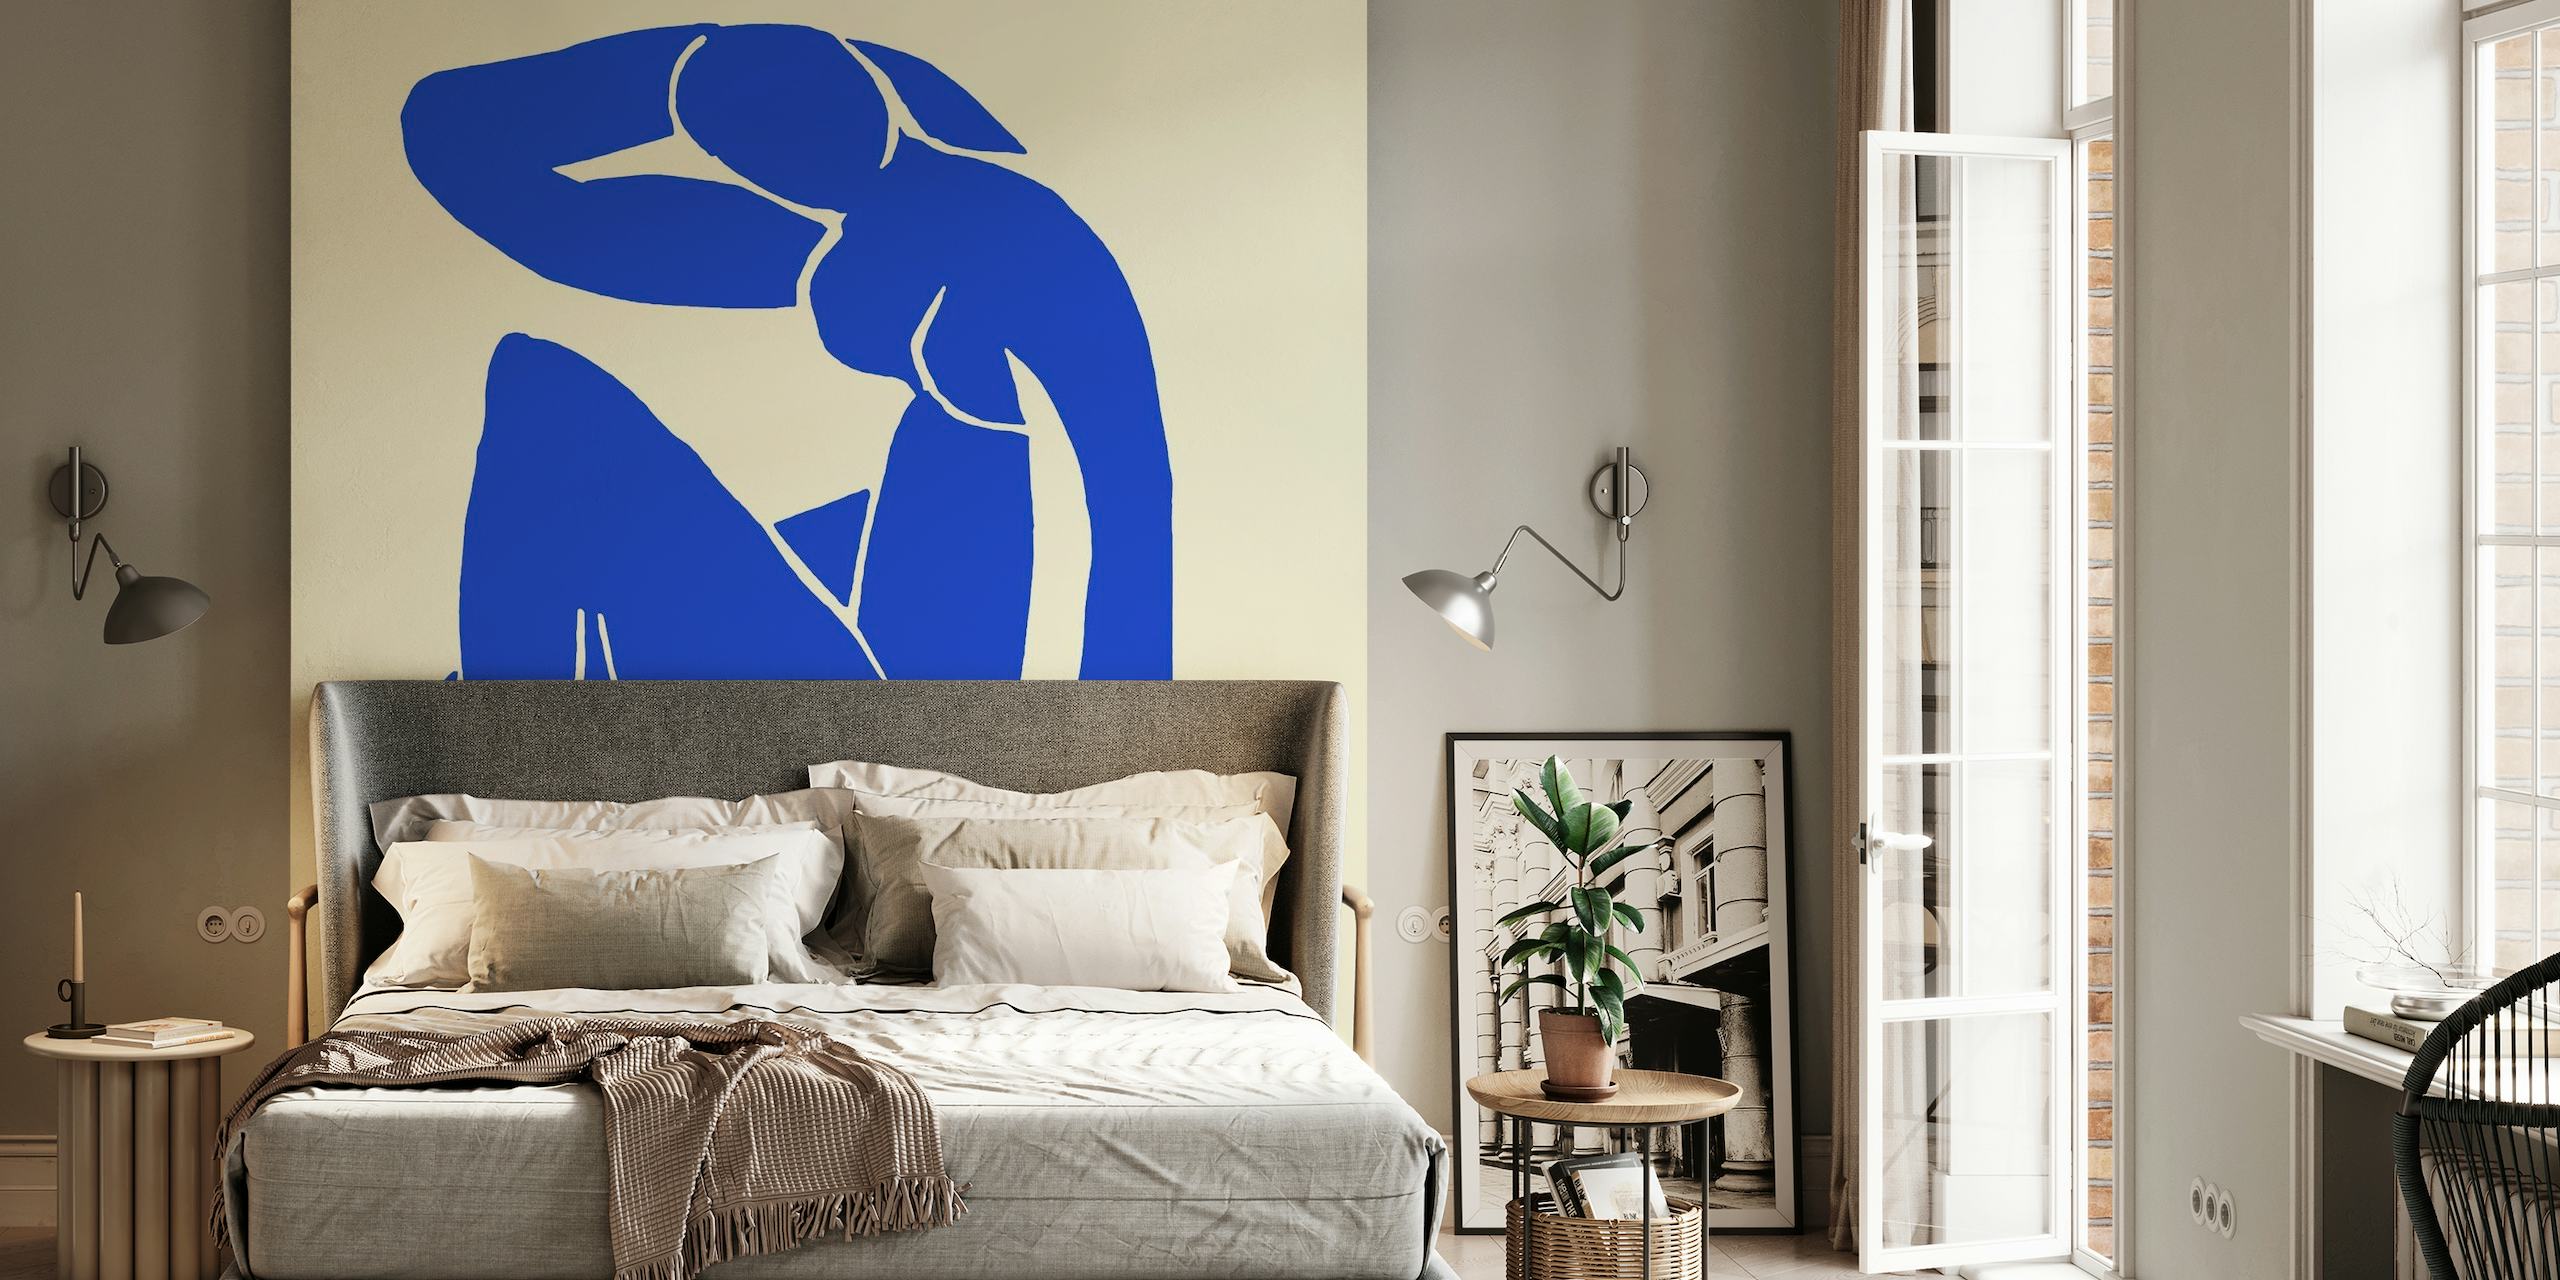 Abstraktes Wandgemälde mit blauen Figuren, inspiriert vom Kunststil von Matisse